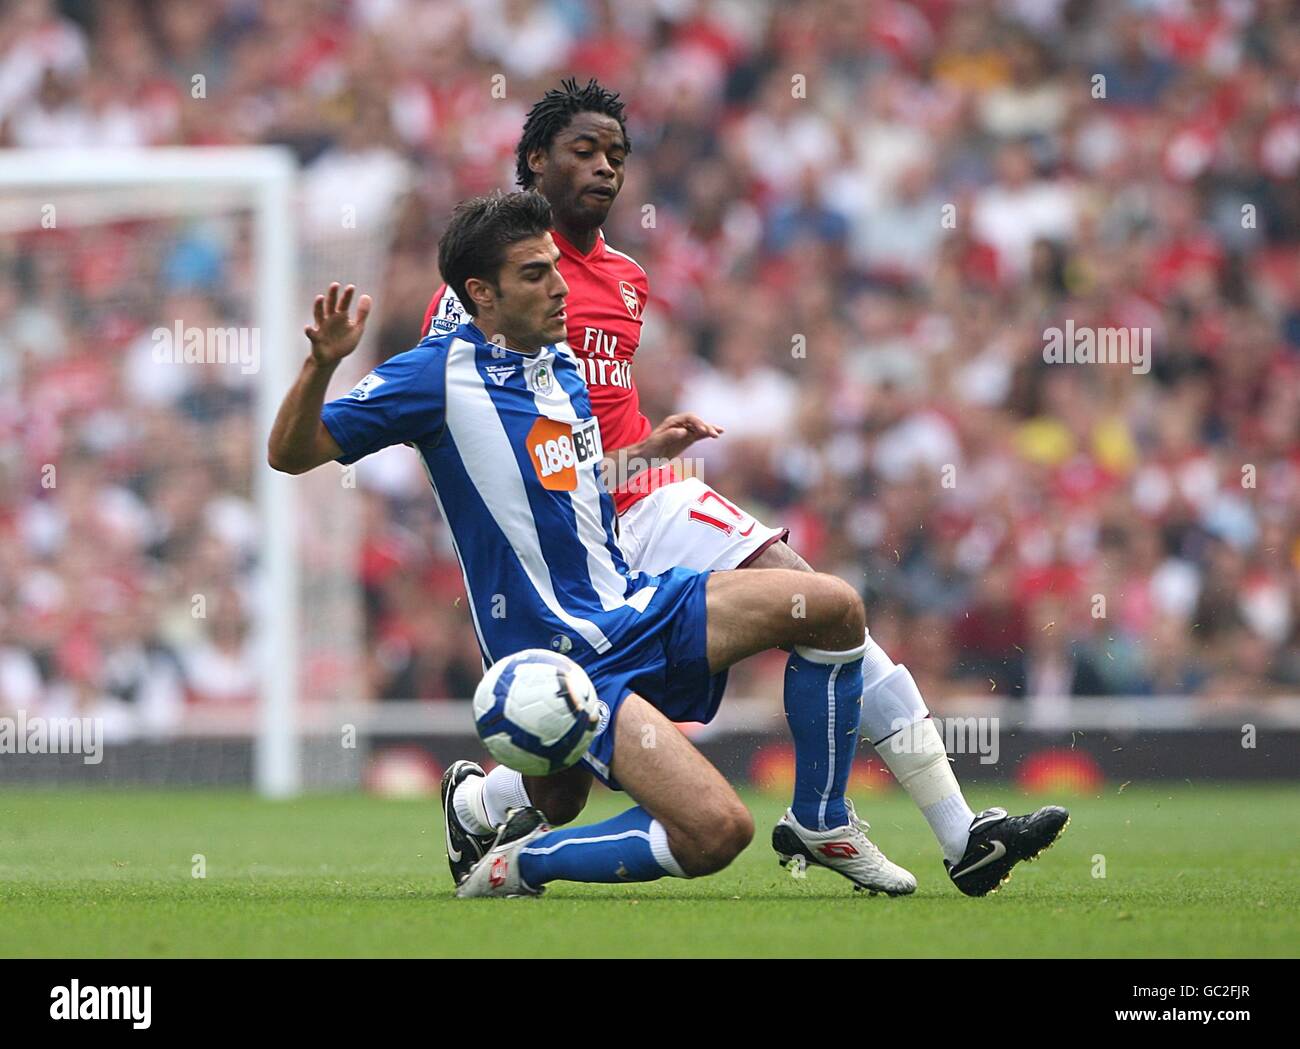 Calcio - Barclays Premier League - Arsenal / Wigan Athletic - Emirates Stadium. Jordi Gomez di Wigan Athletic (a sinistra) e Alexandre Song Billong di Arsenal (a destra) lottano per la palla Foto Stock